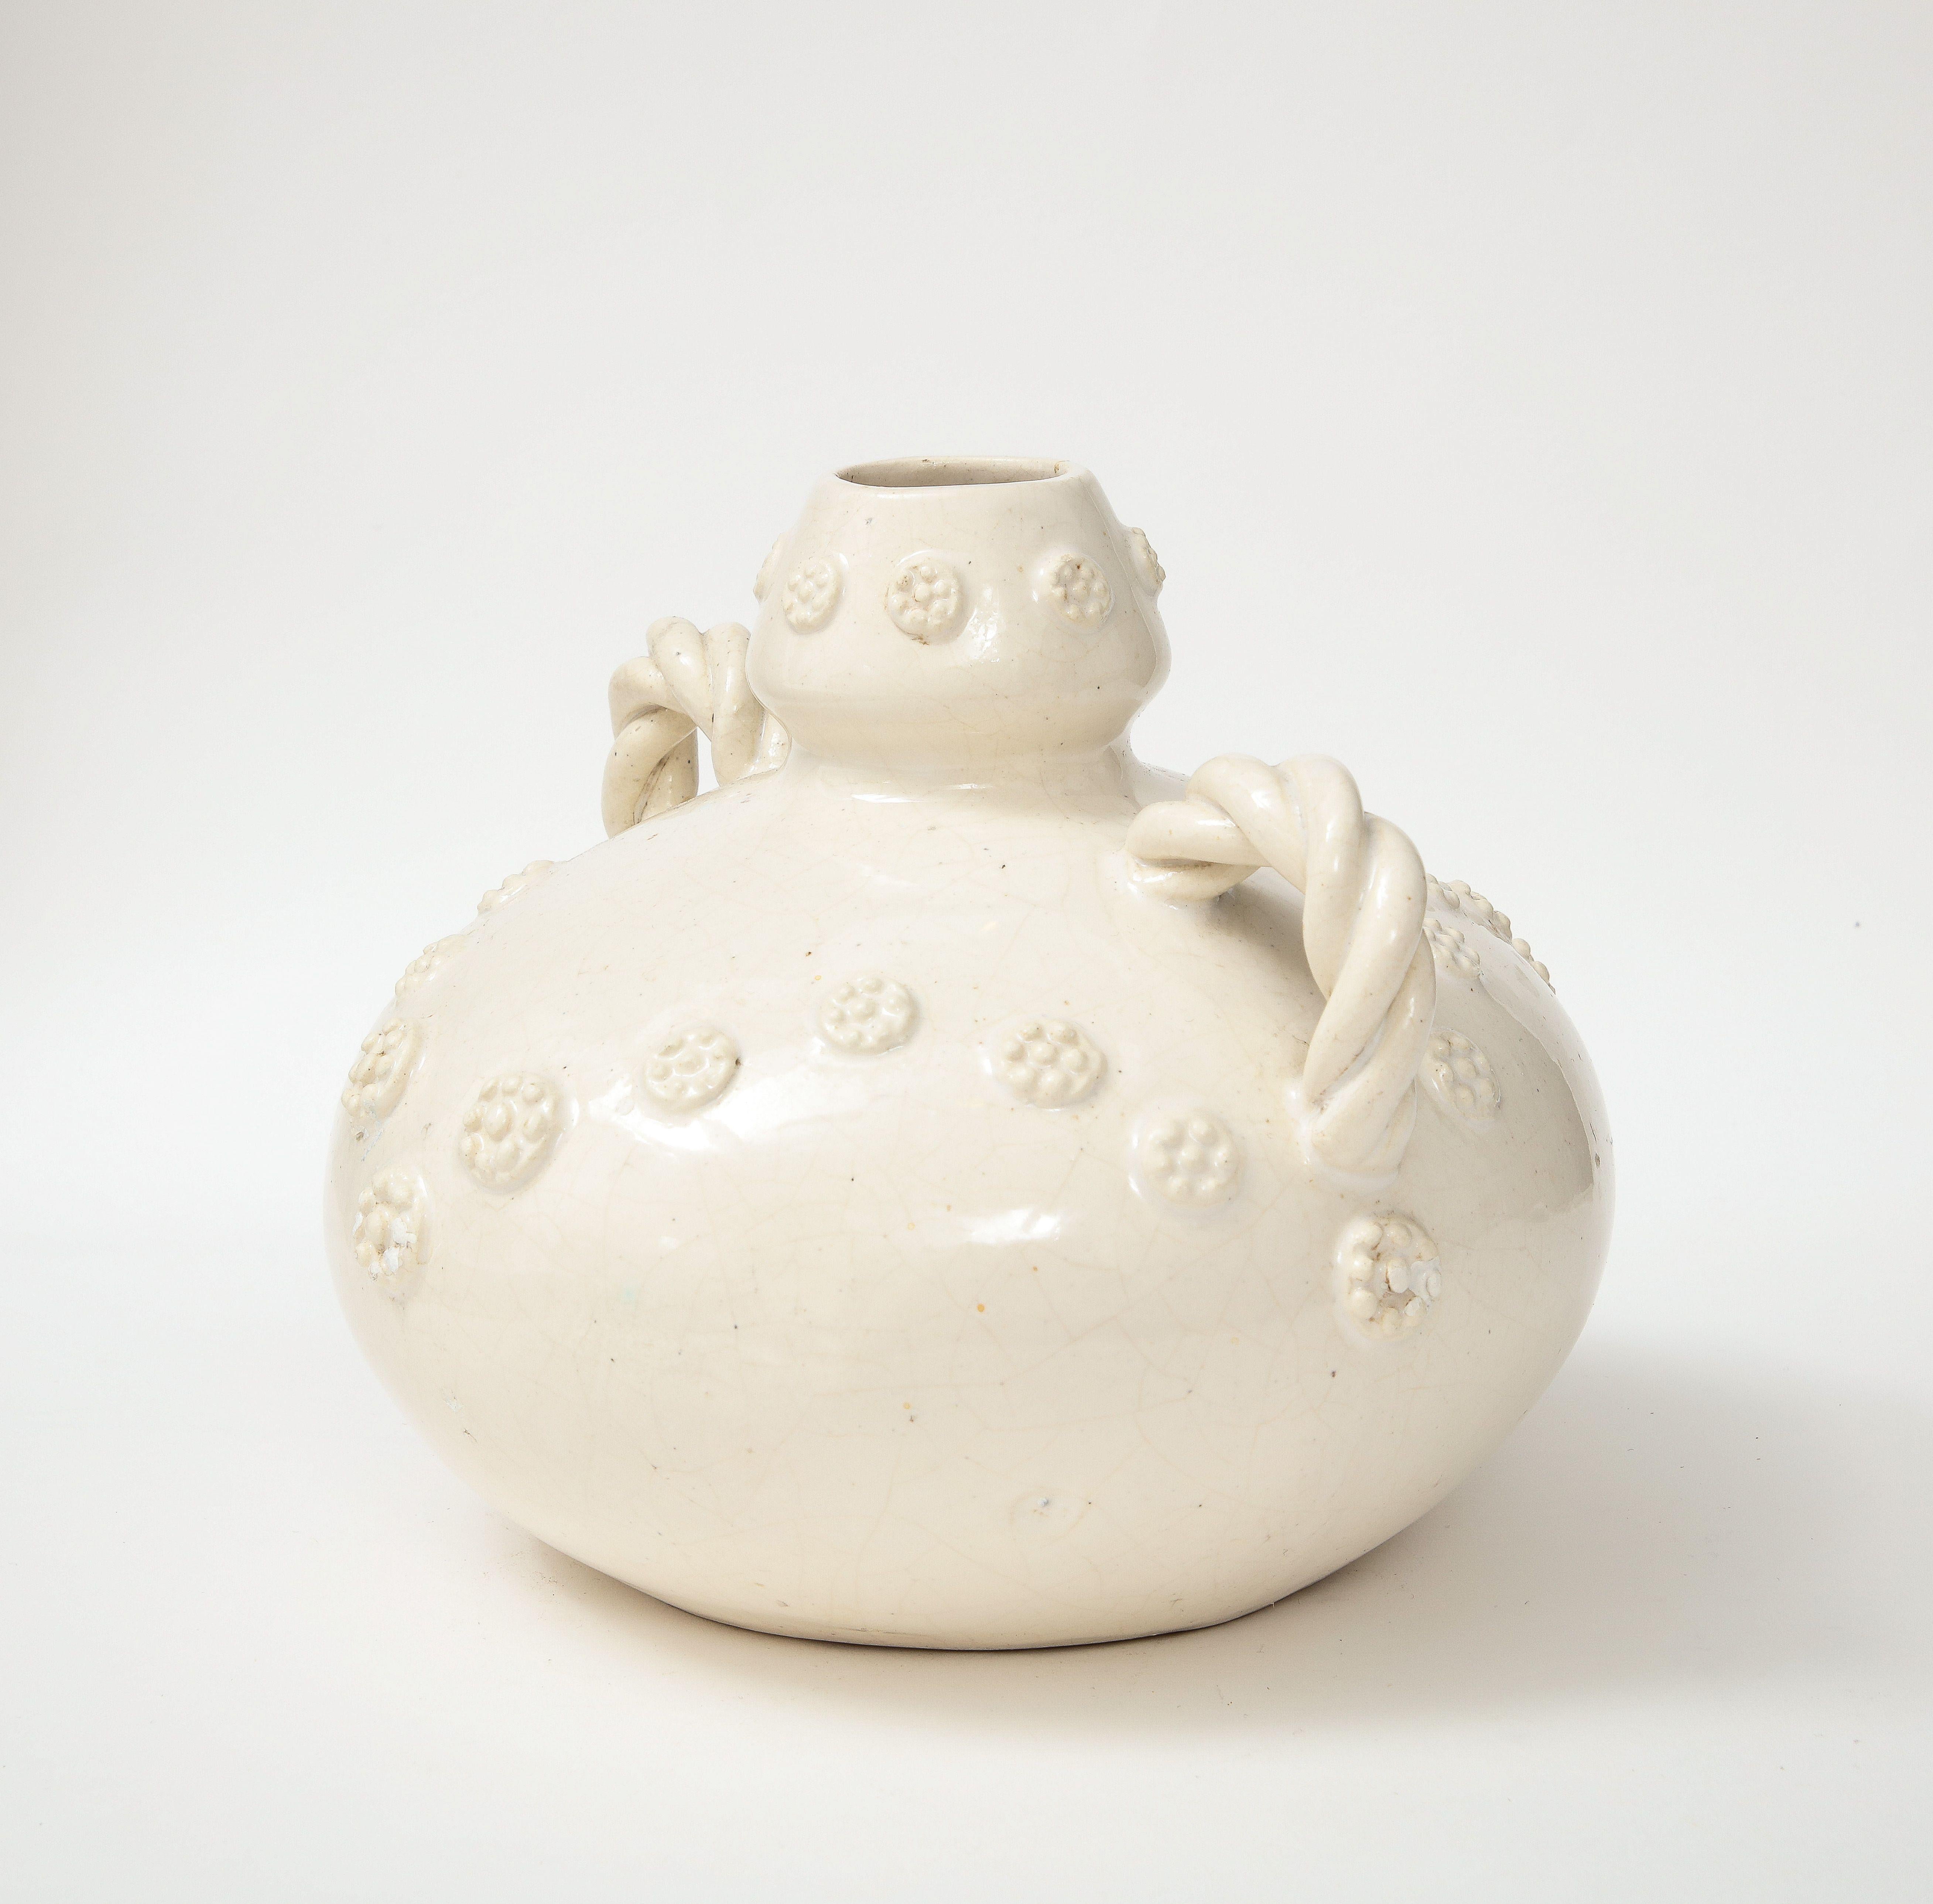 Eine einzigartige und schöne Fayence Krug zugeschrieben  an den französischen Keramiker Emile Tessier. Diese Vase, die zu einer Serie in unserem Bestand gehört, hat nicht nur eine schöne Form, sondern weist auch handgeschnitzte Details an der